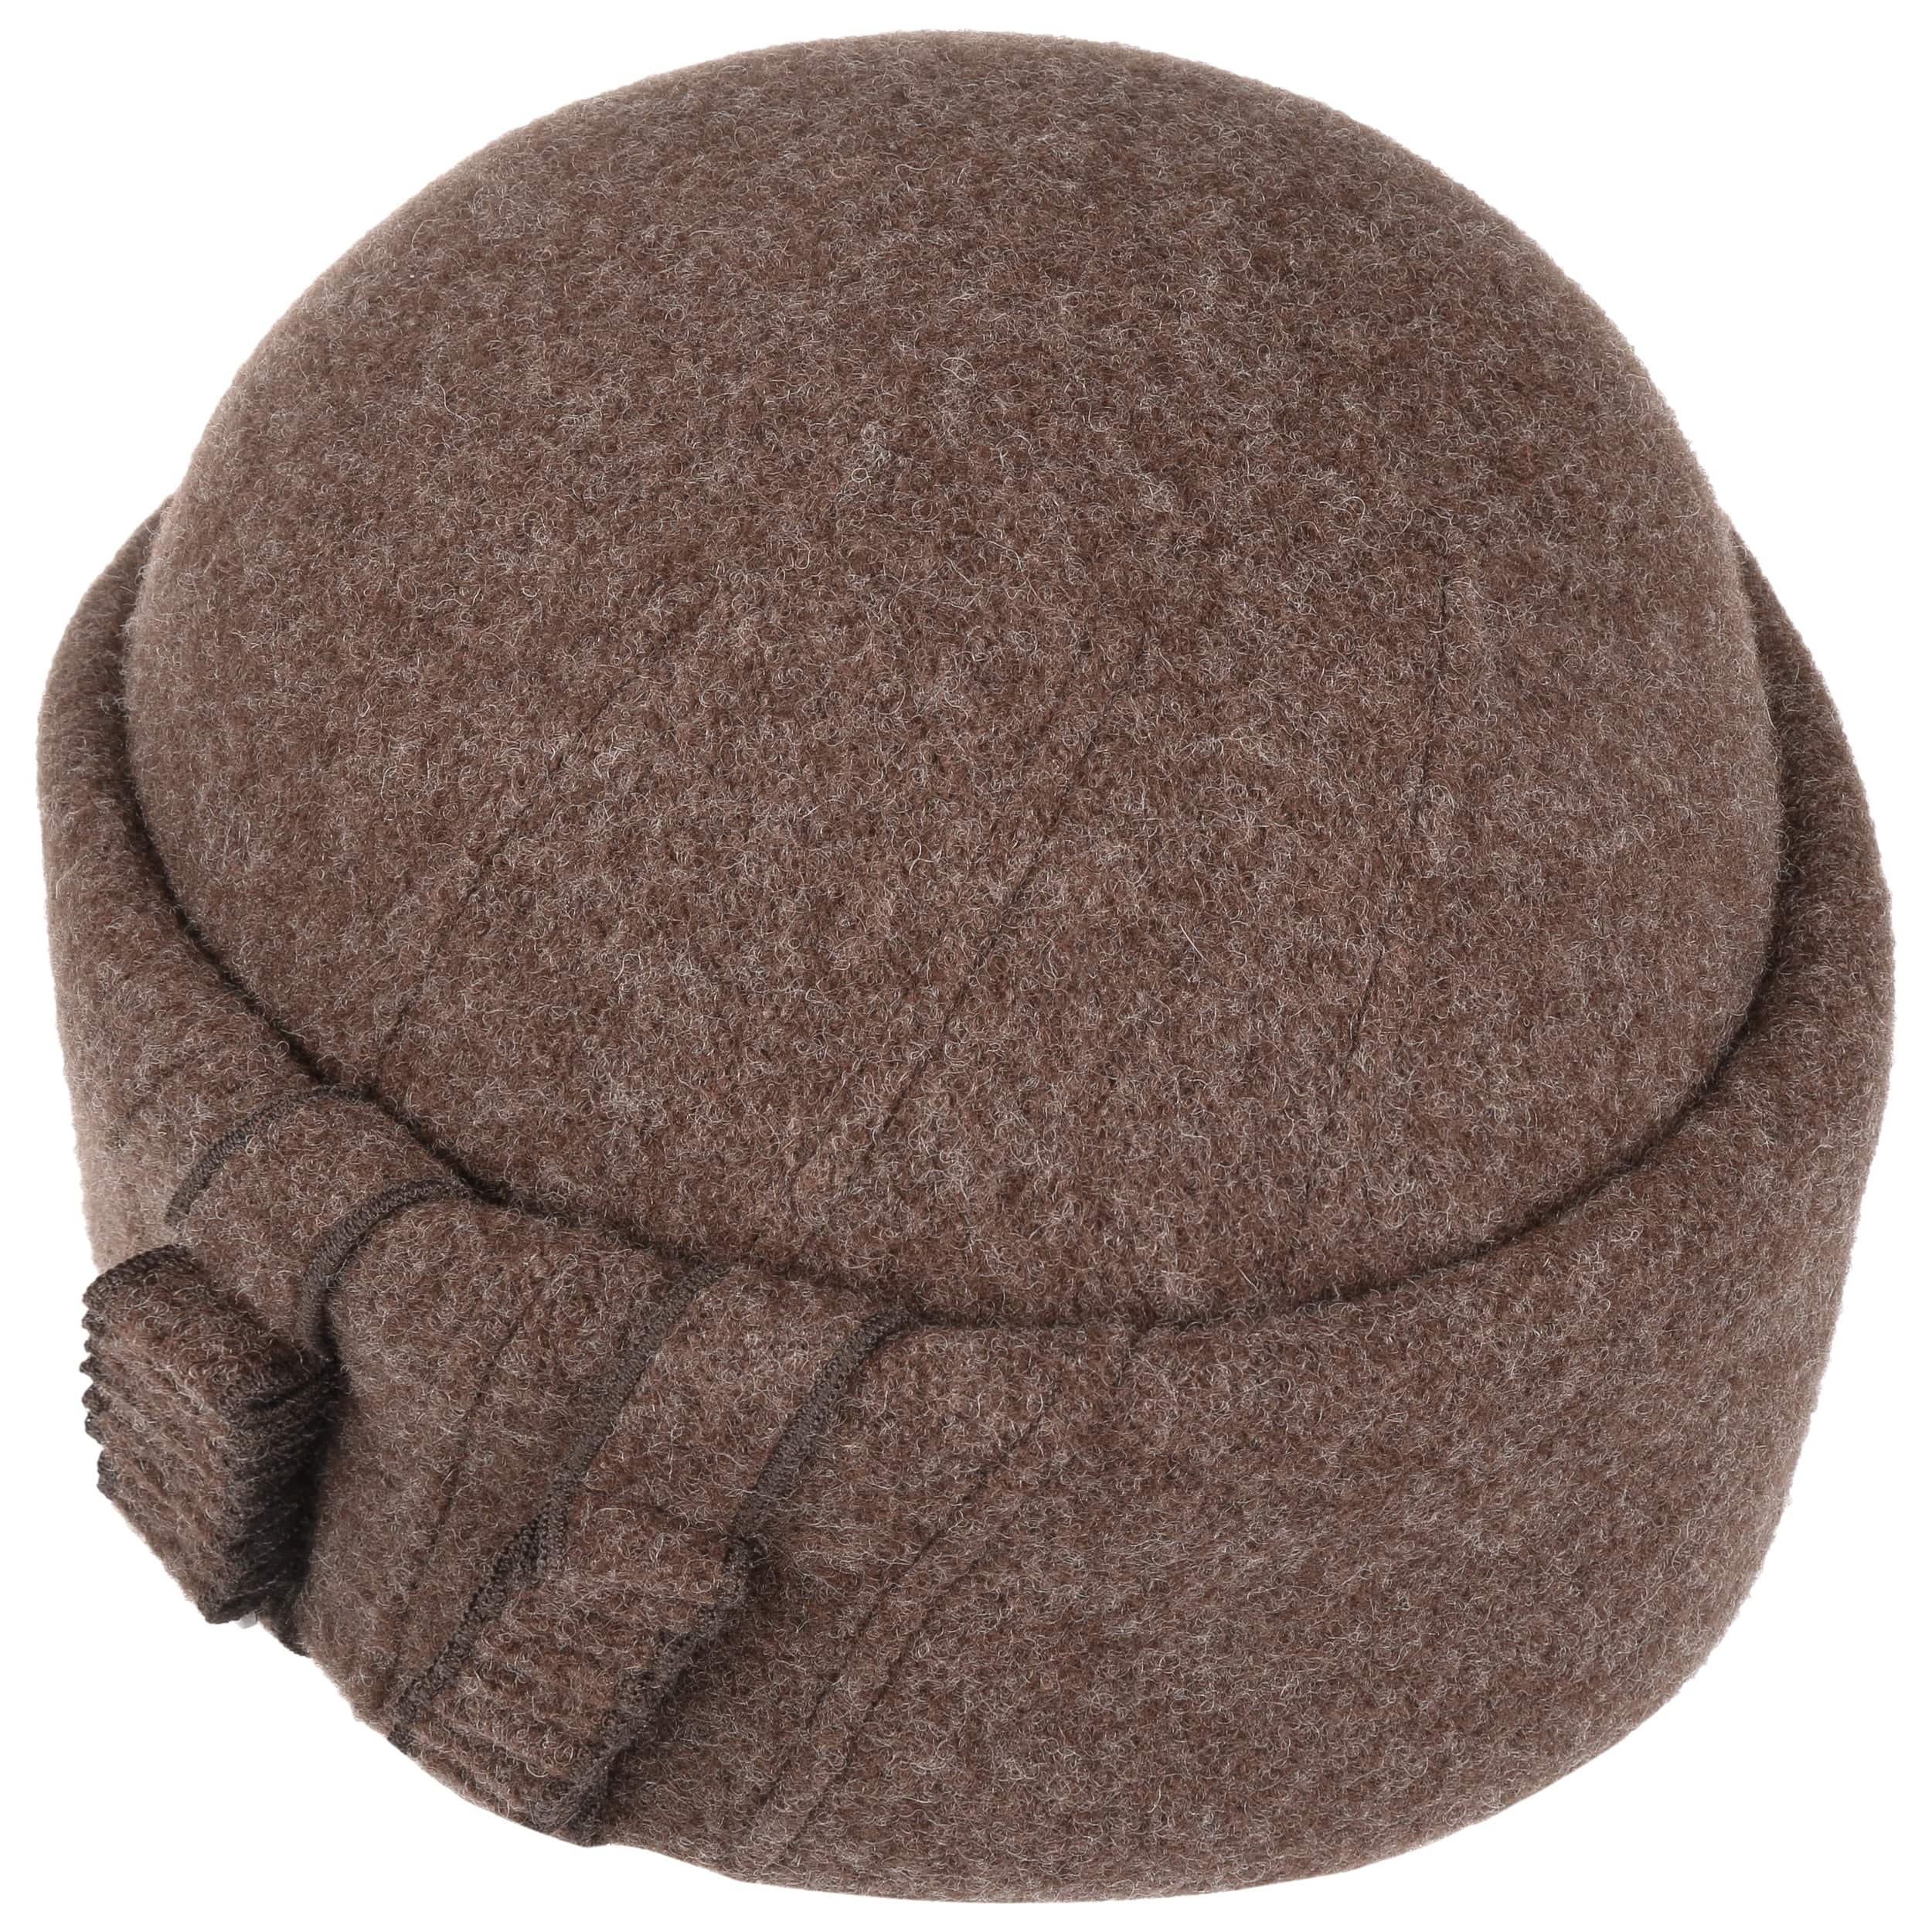 Binara Milled Wool Hat by Lierys - 62,95